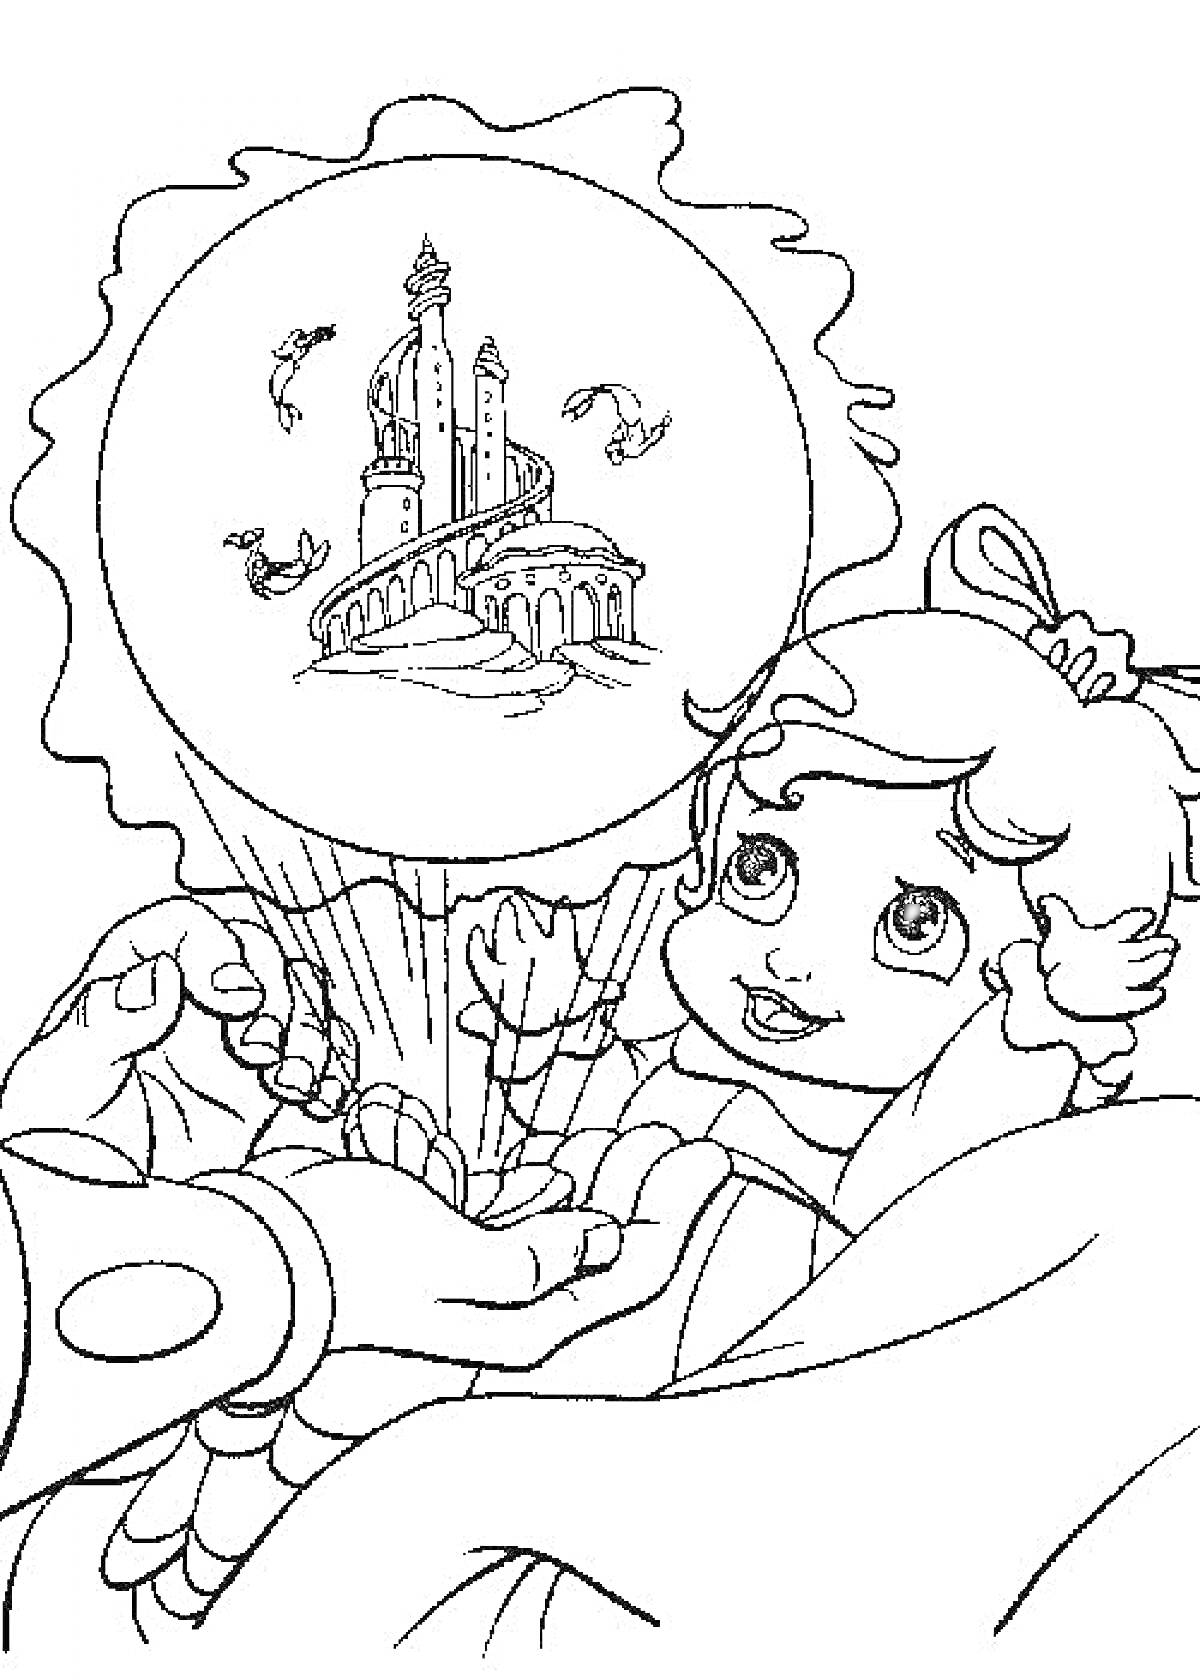 Раскраска Ариэль русалочка с замком и рыбками в магическом шаре, руки, ленты в волосах